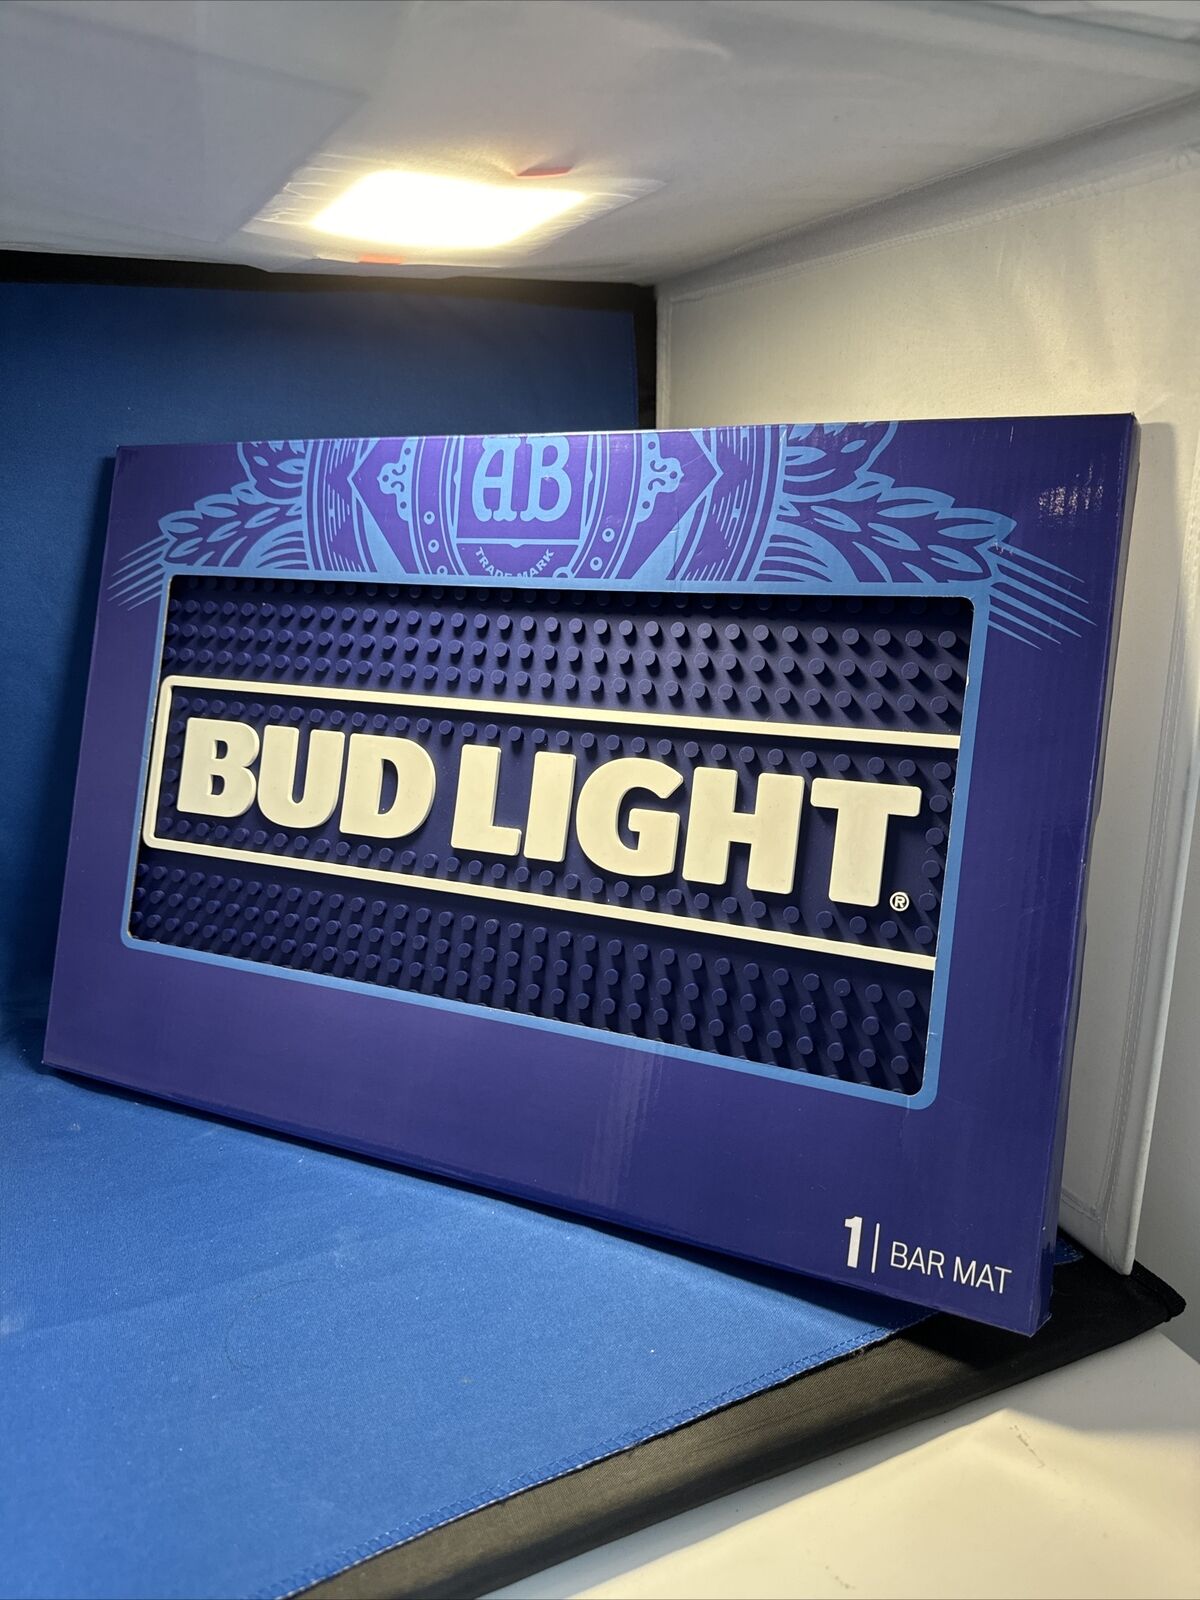 BUDWEISER BUD LIGHT BEER BAR MAT 12 X 18” Rubber Drip Mat